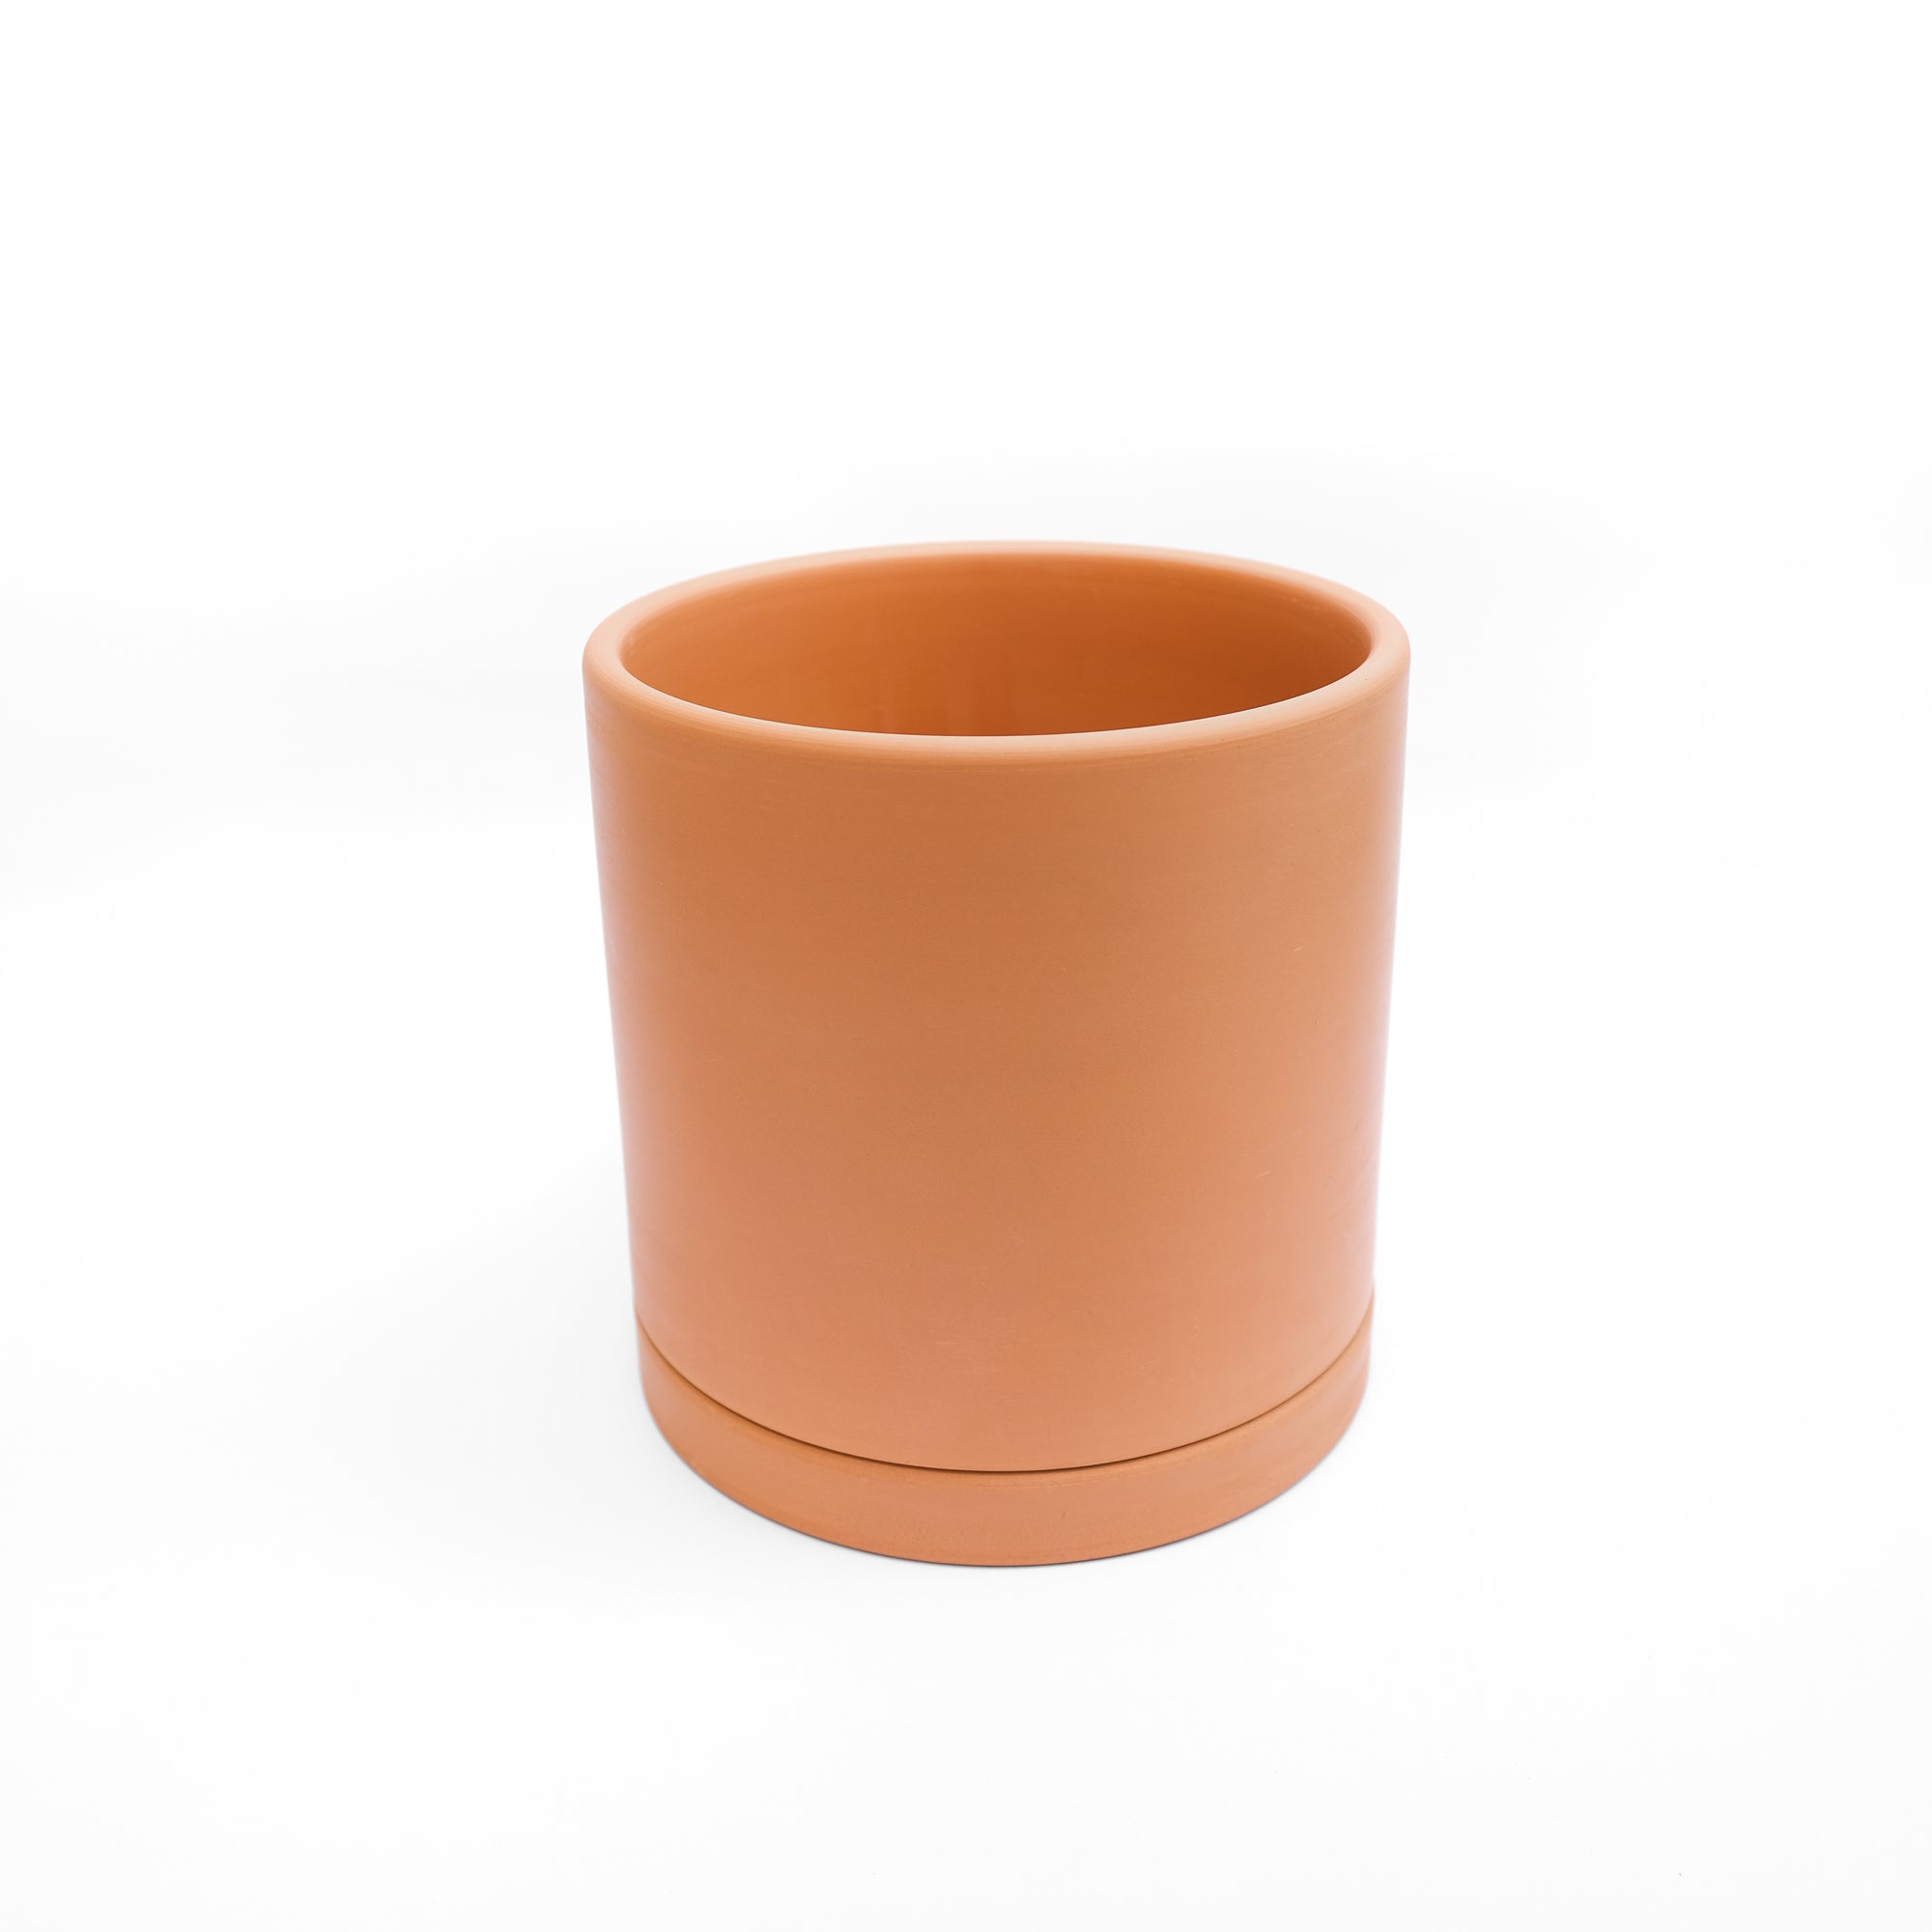 Straight-edge Terracotta Pot - L